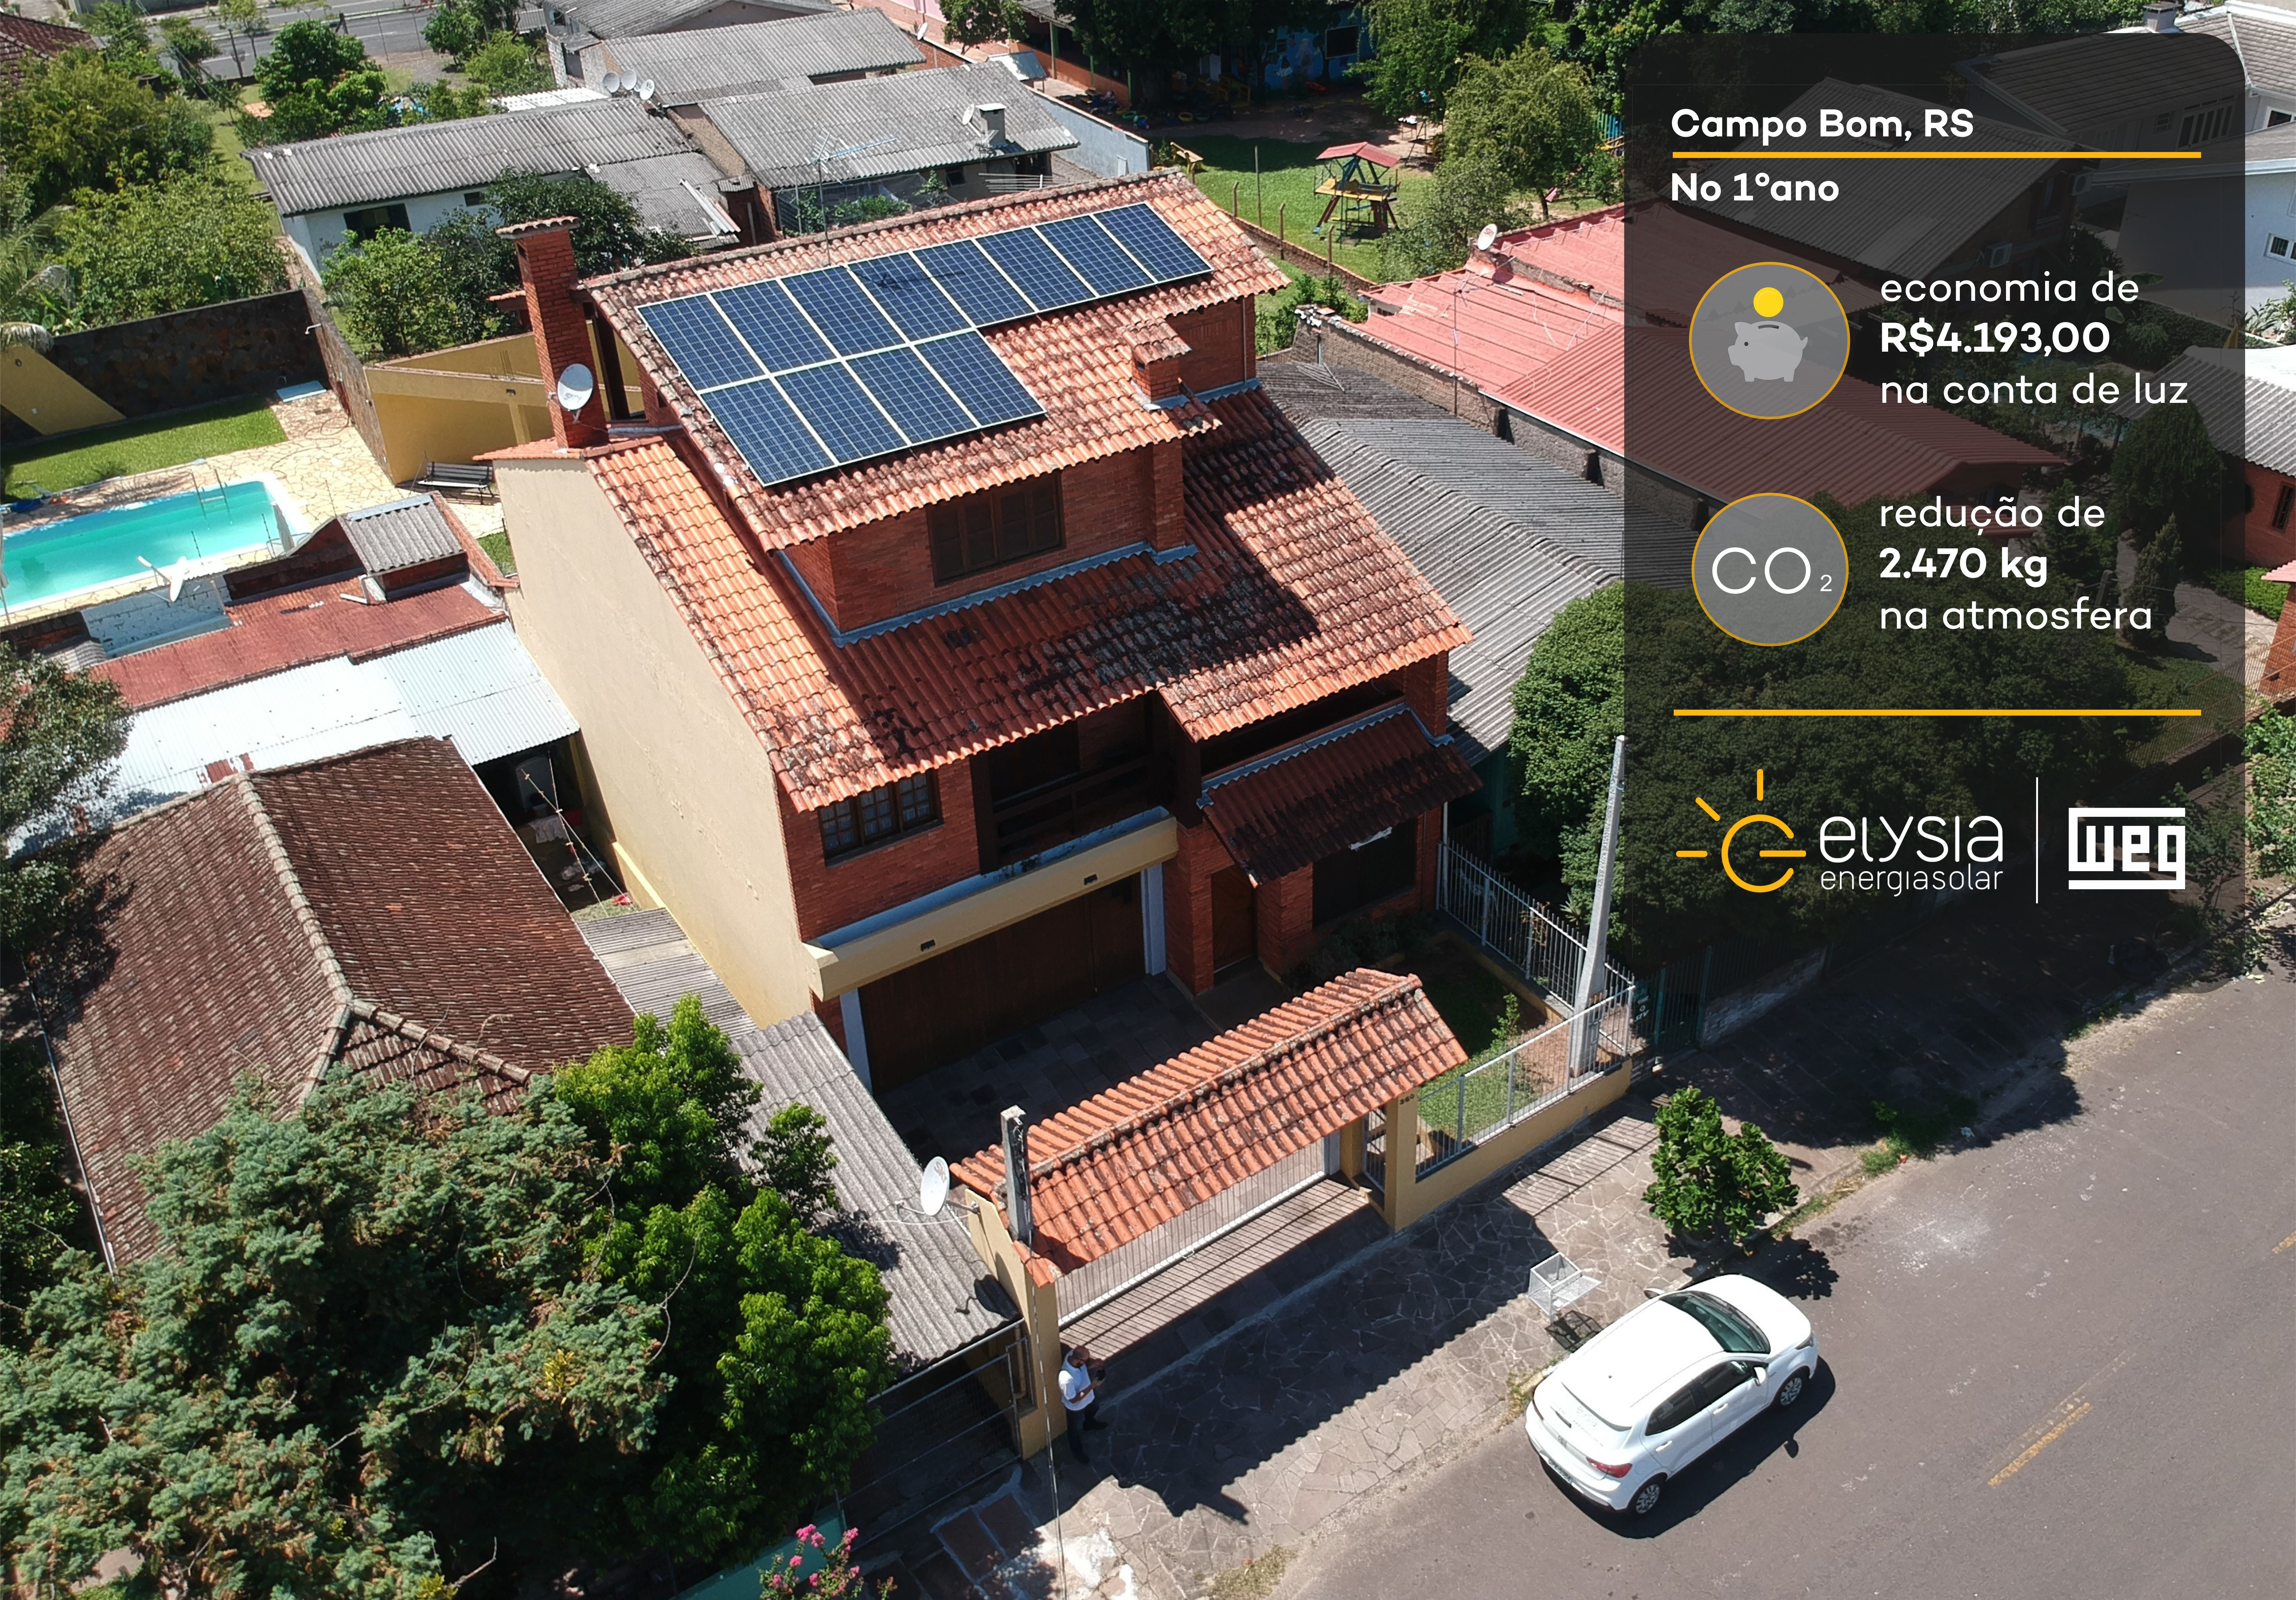 Sistema fotovoltaico em Campo Bom - Elysia energia solar Rio Grande do Sul